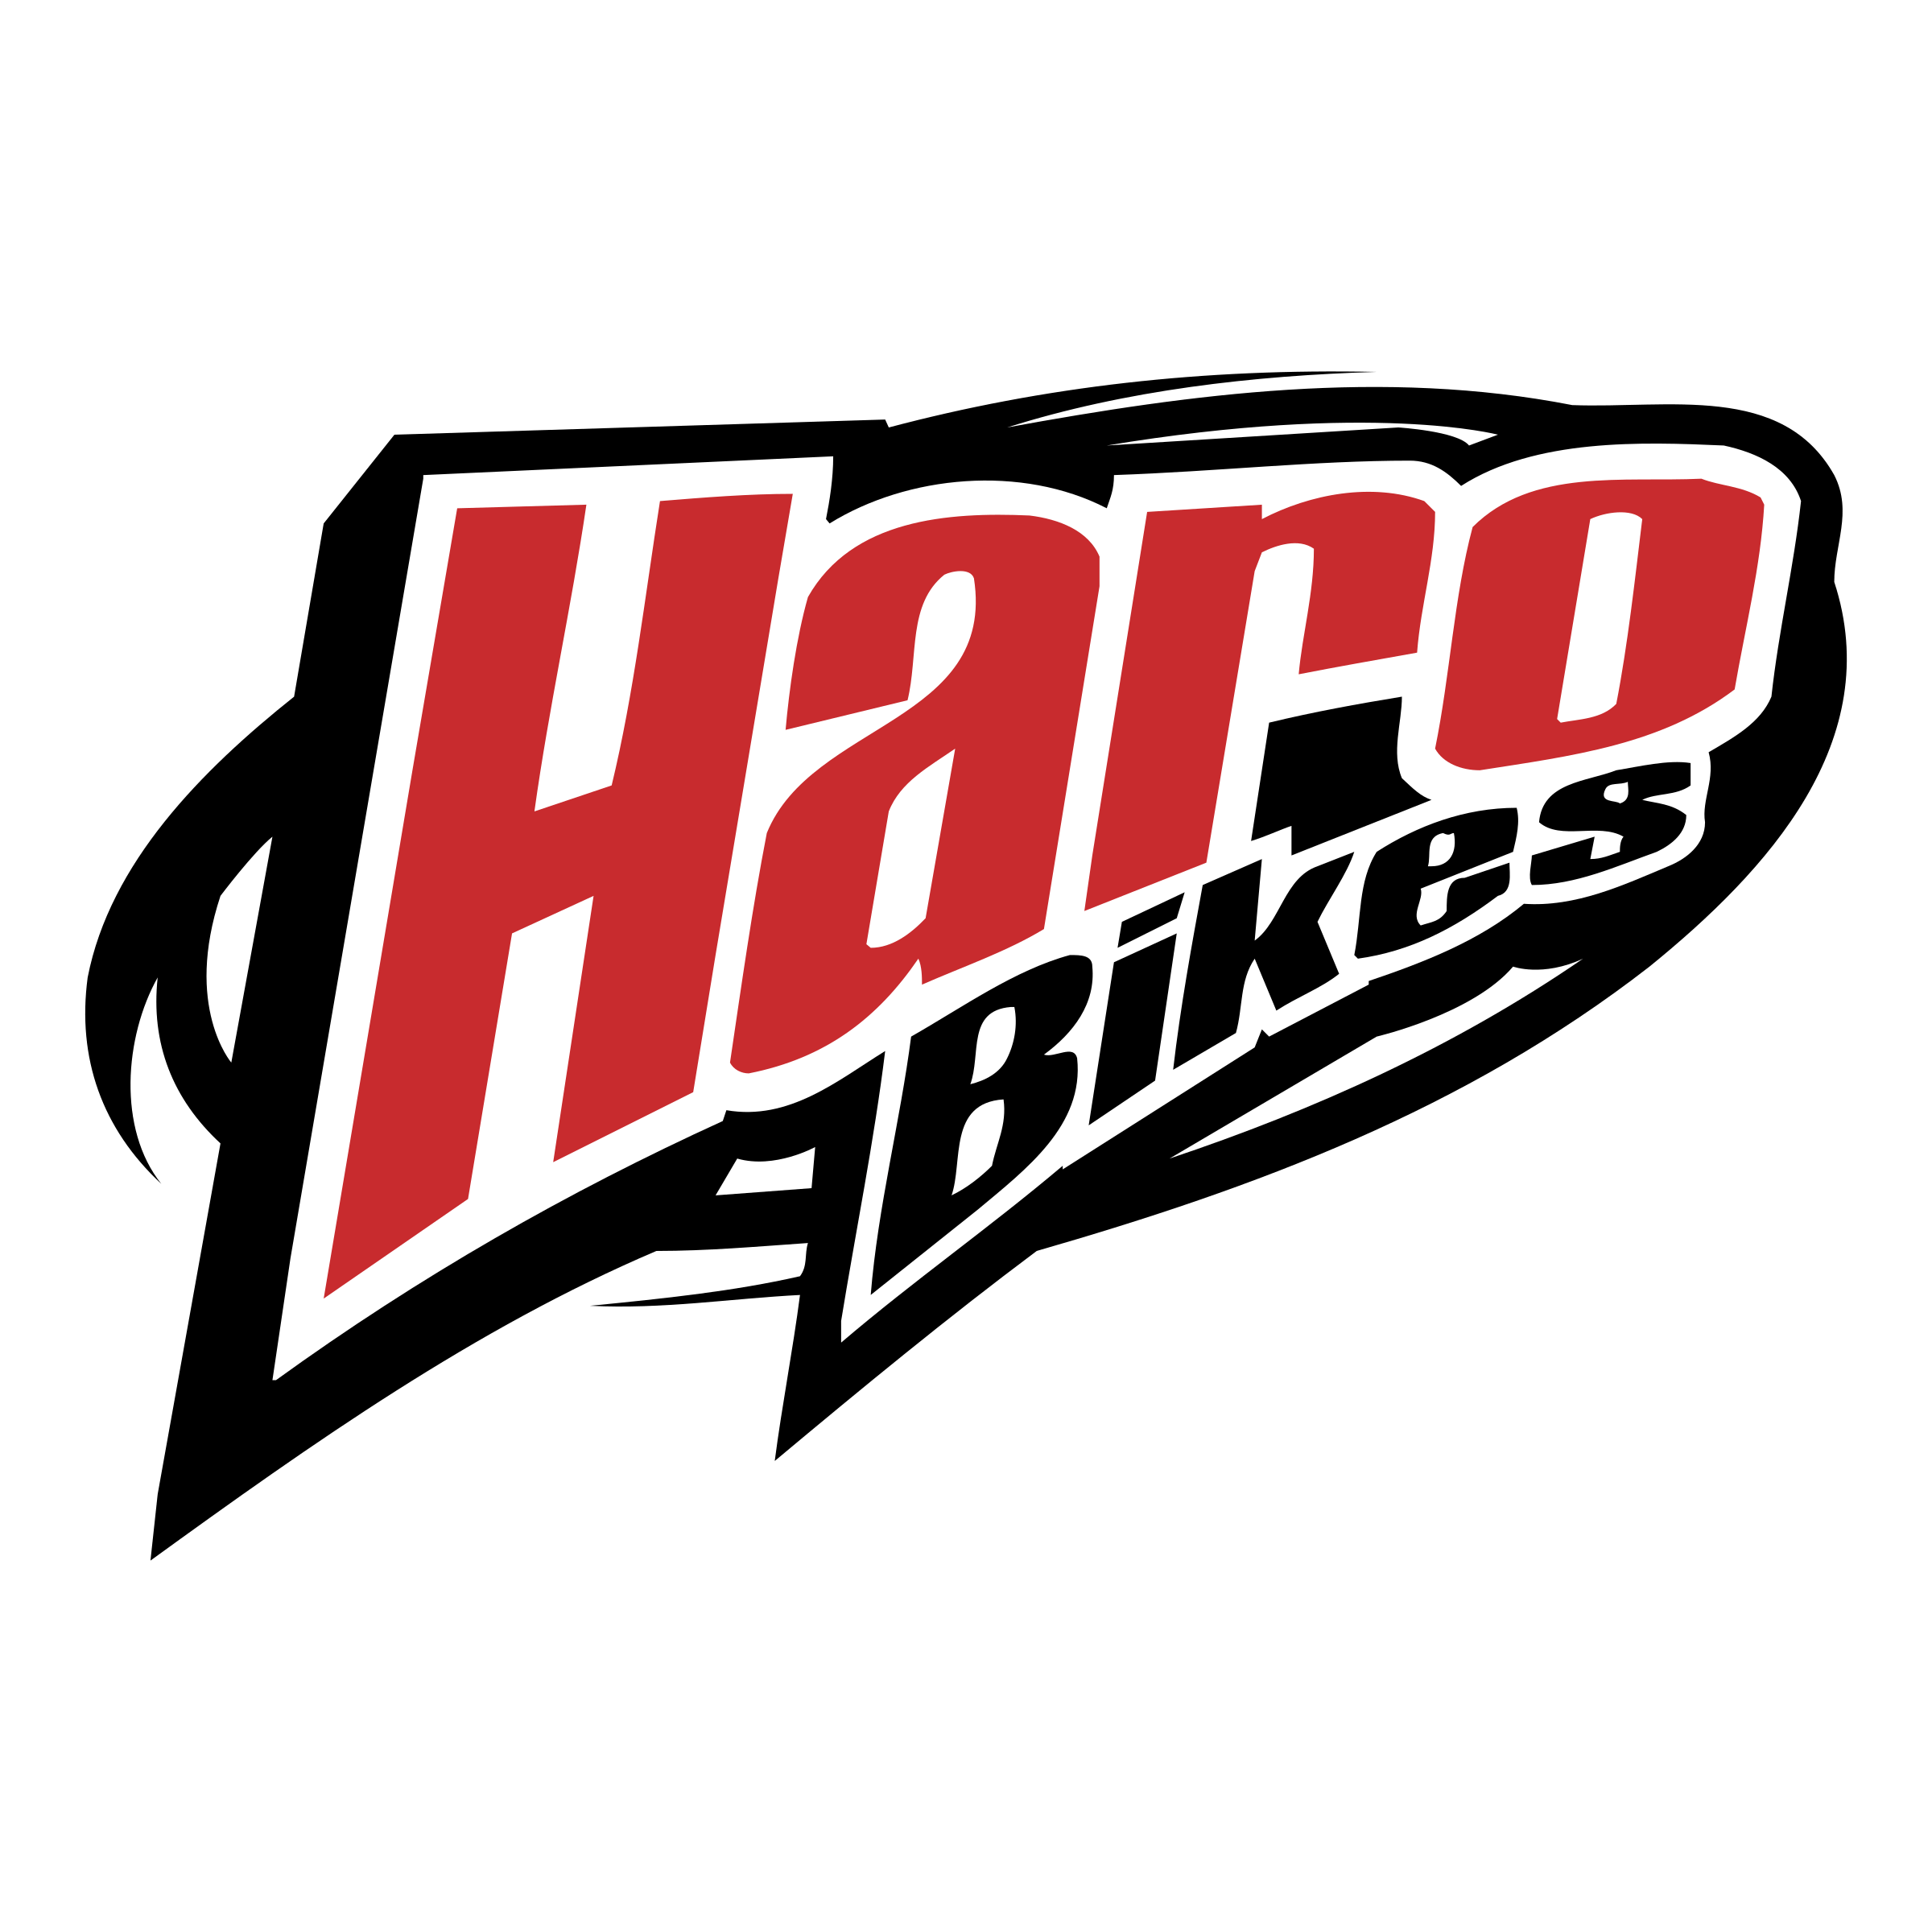 Haro Logo - Haro Bikes Logo PNG Transparent & SVG Vector - Freebie Supply